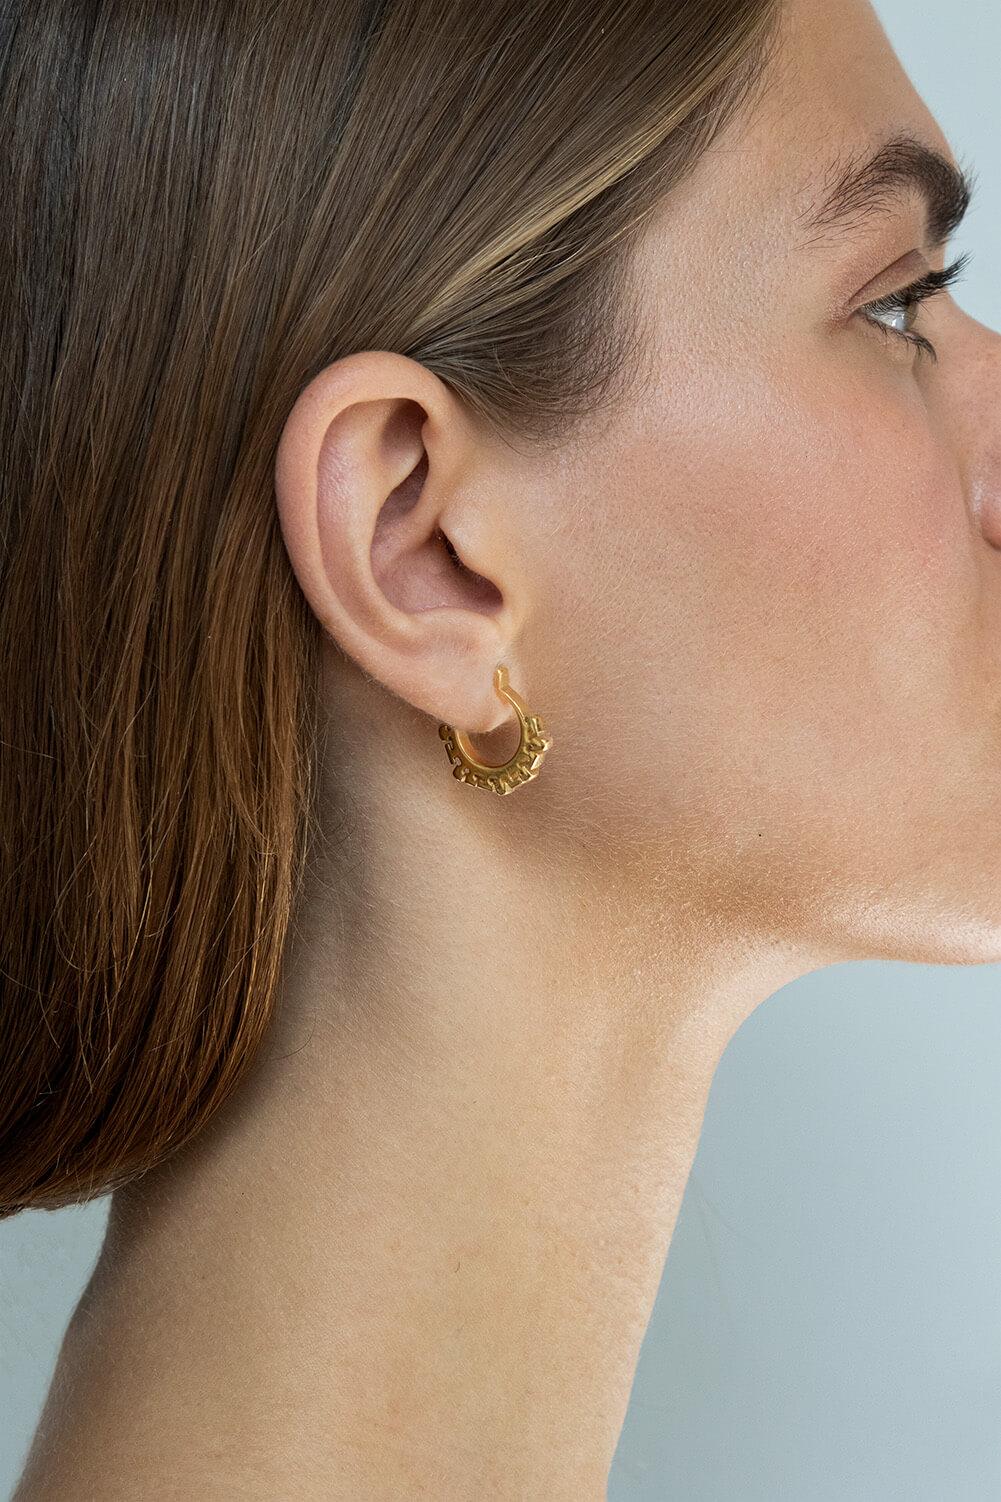 24k gold earrings bay harbor